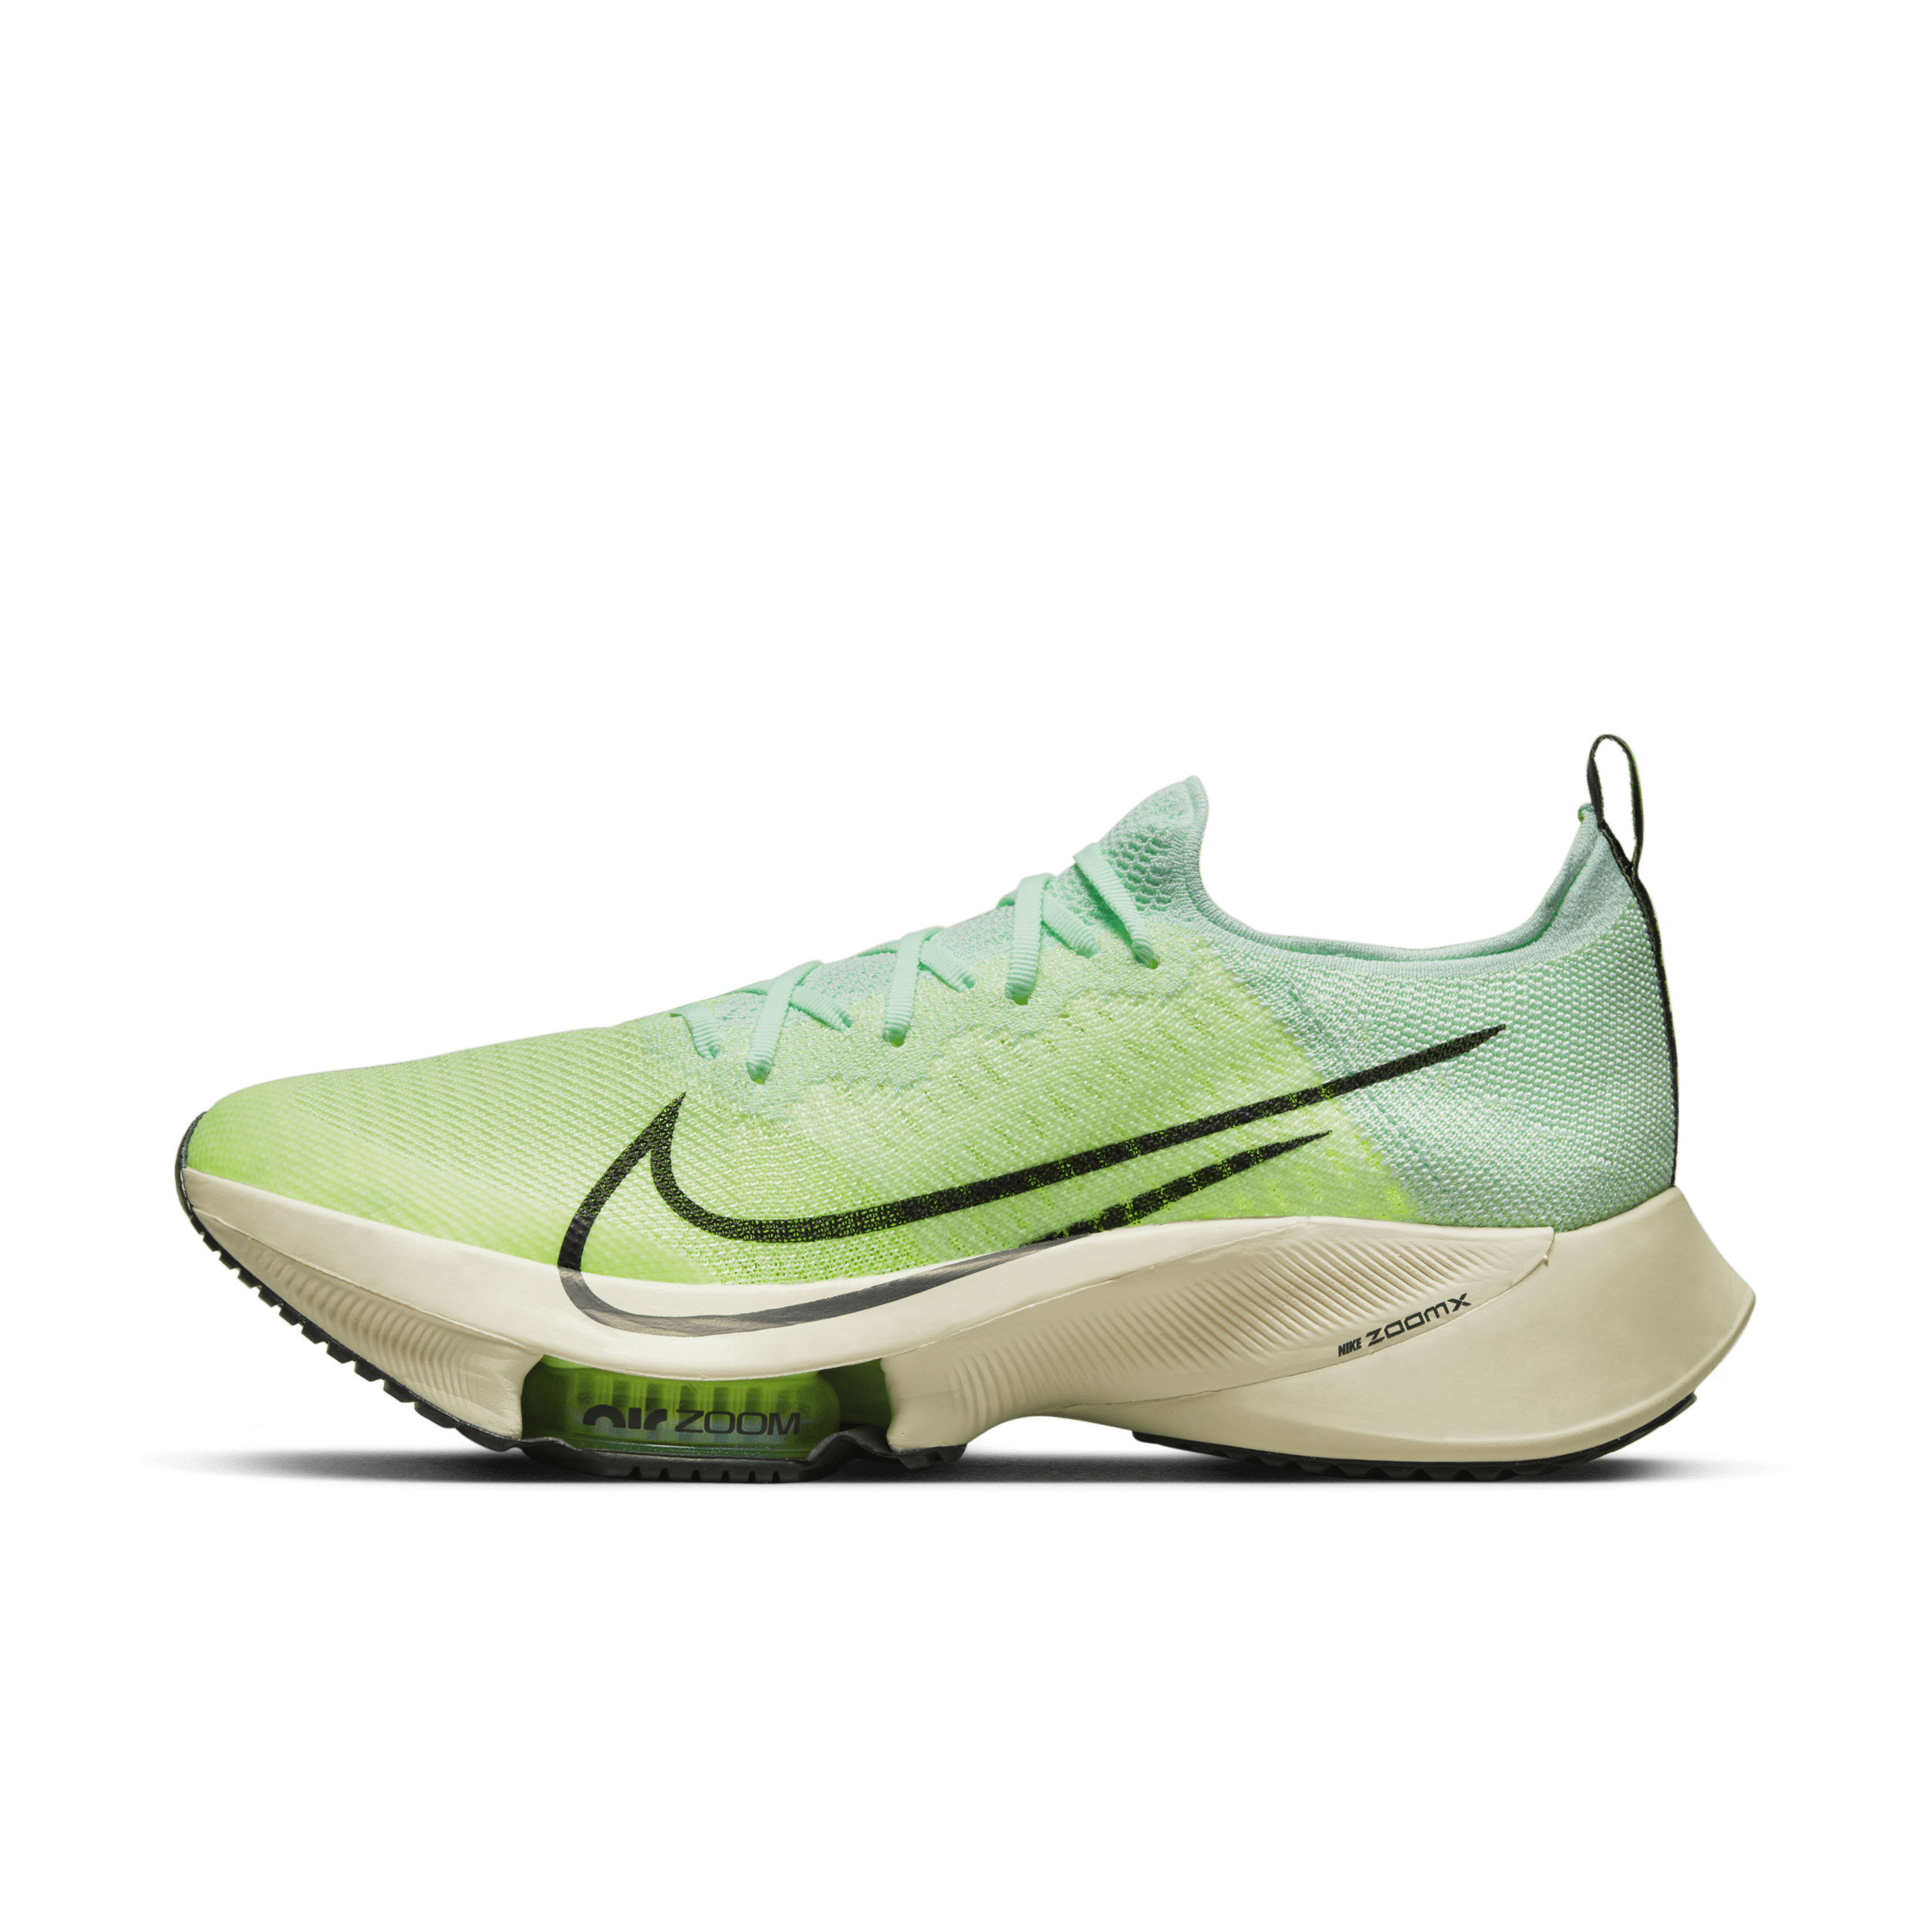 Nike Air Zoom Tempo NEXT% Zapatillas de running para asfalto - Hombre - Amarillo